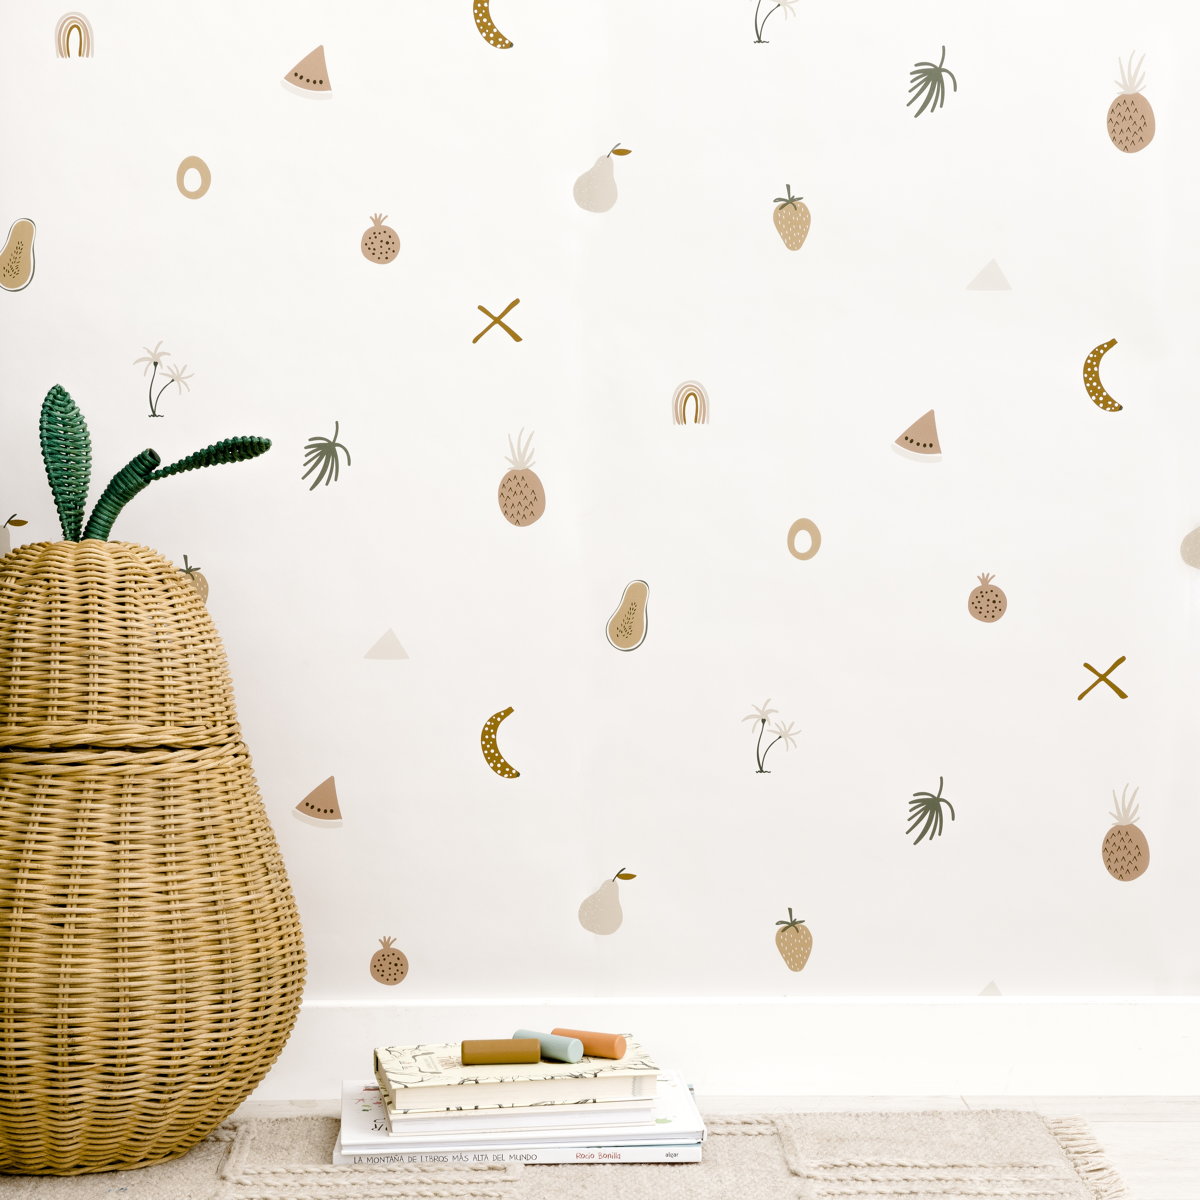 Fruity wallpaper pastel